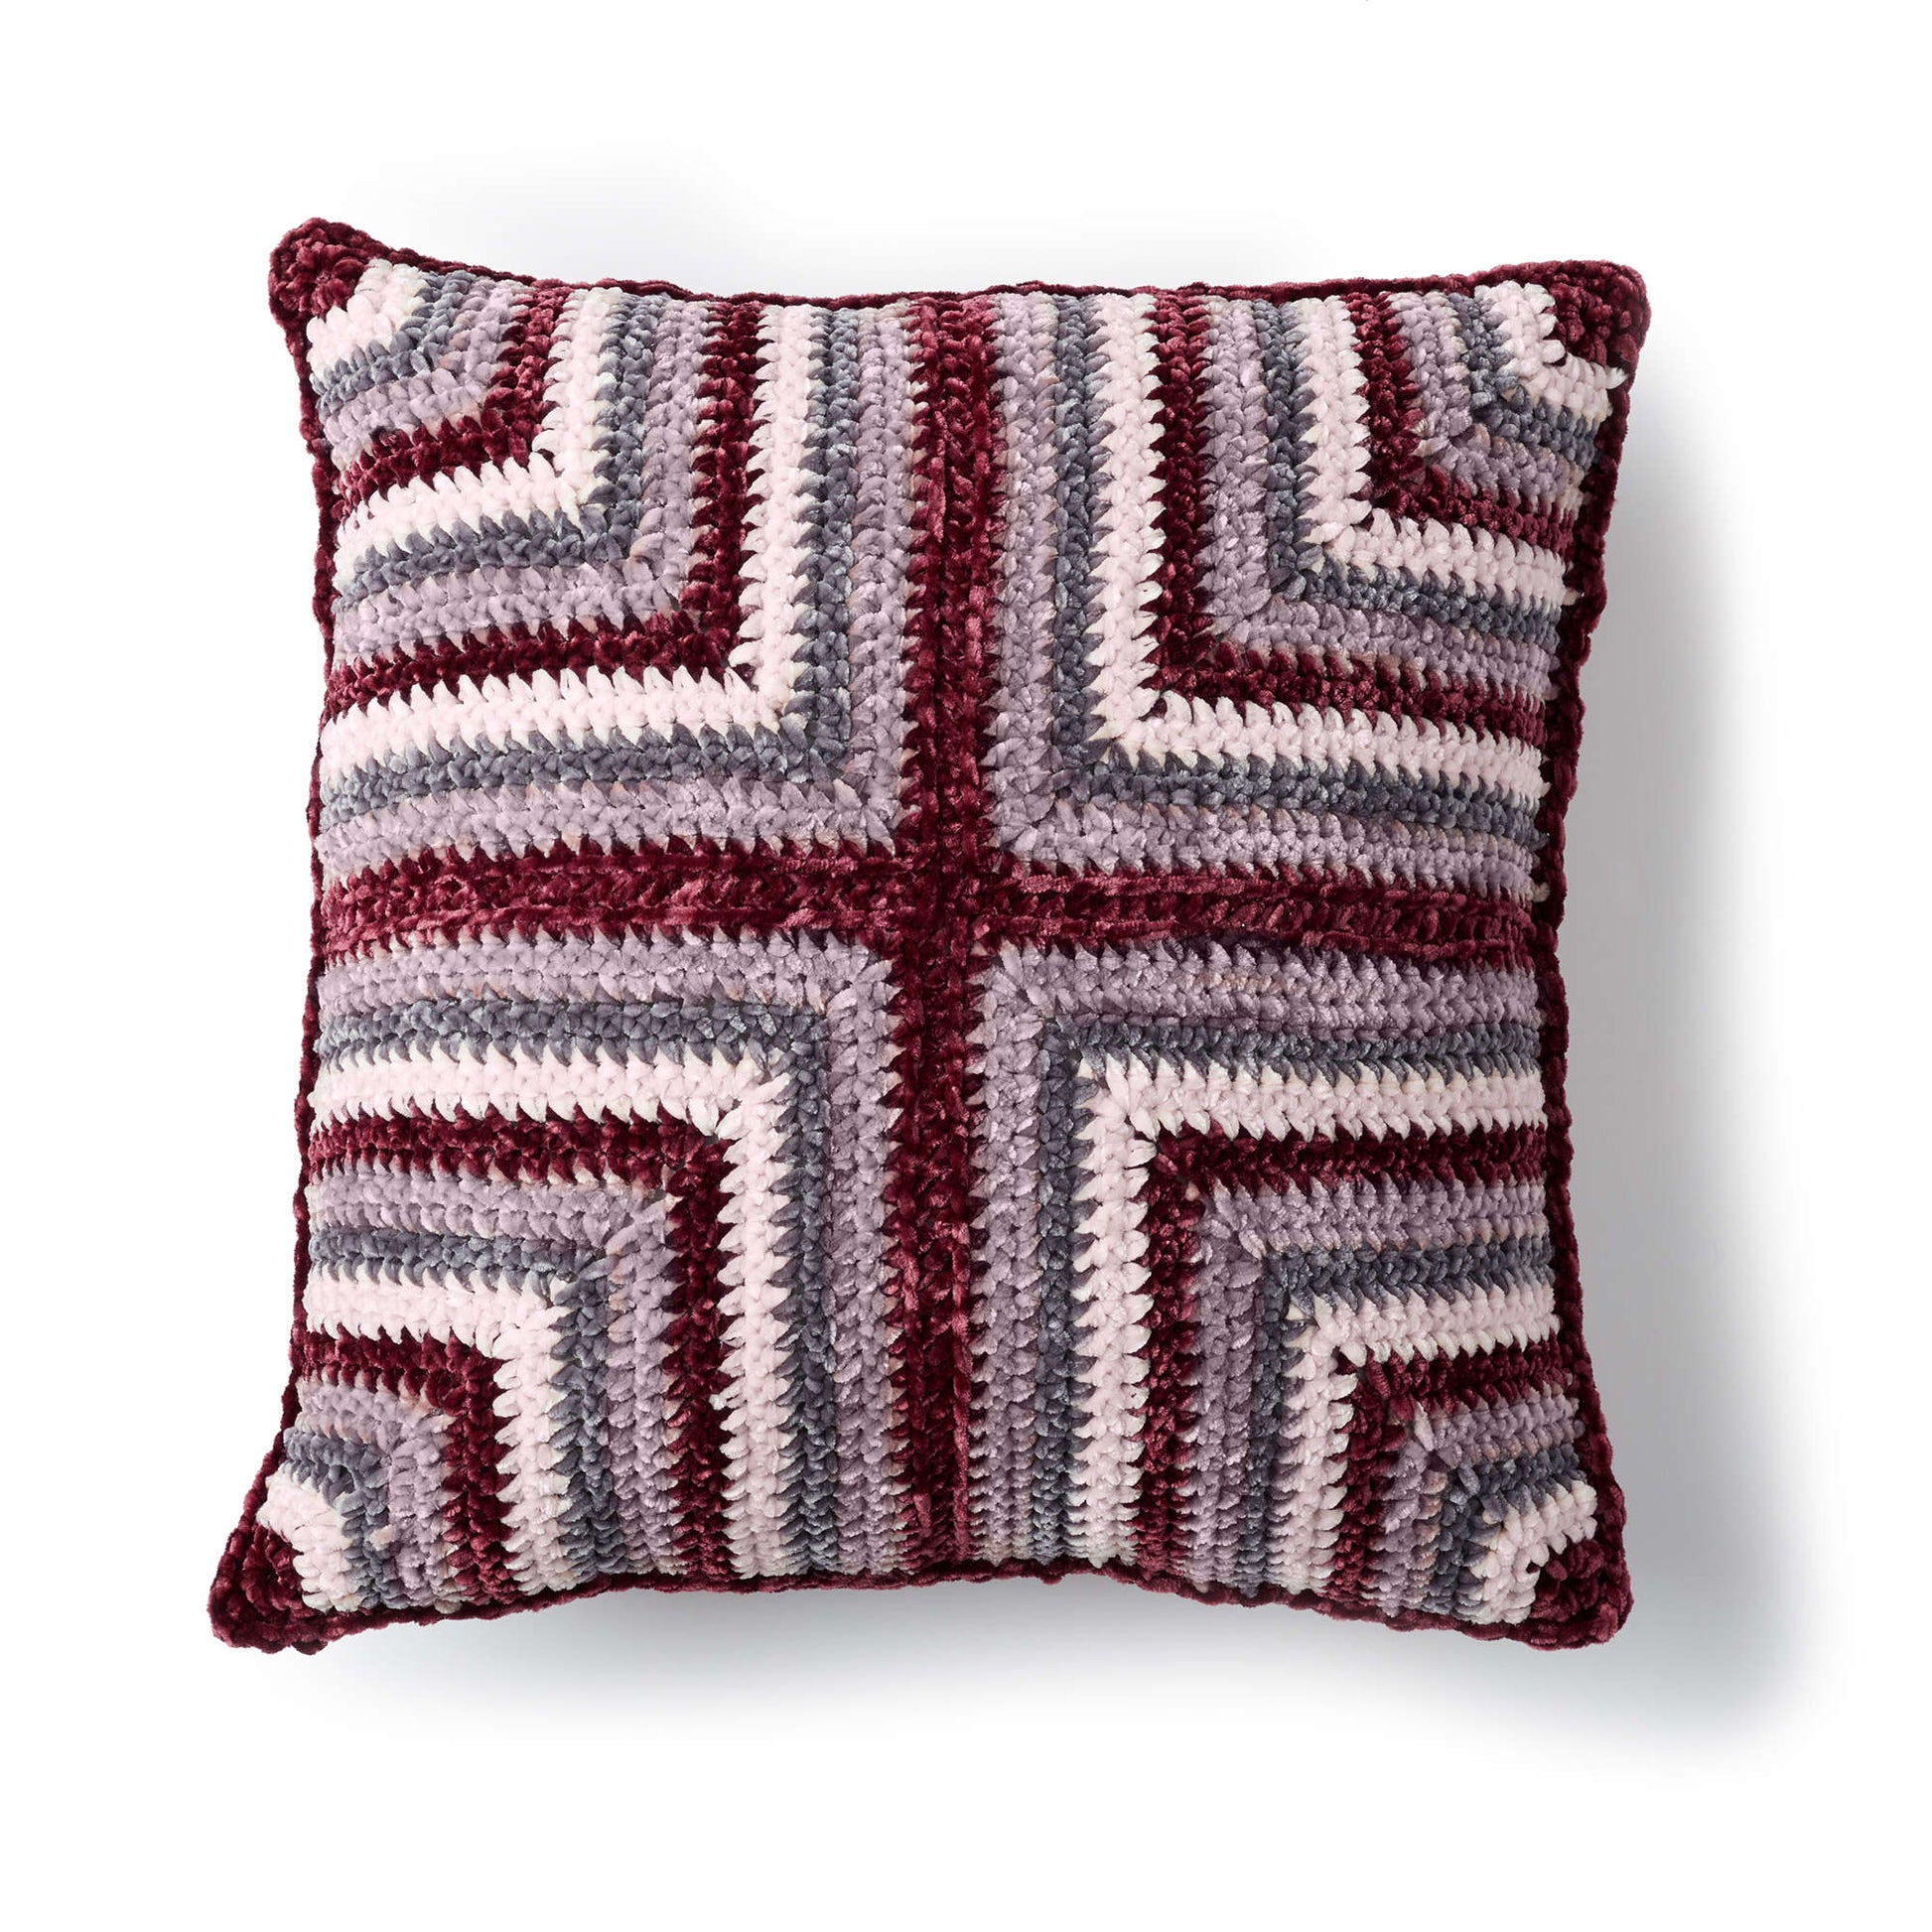 Bernat Mitered Squares Crochet Cushion Crochet Pillow made in Bernat Velvet yarn